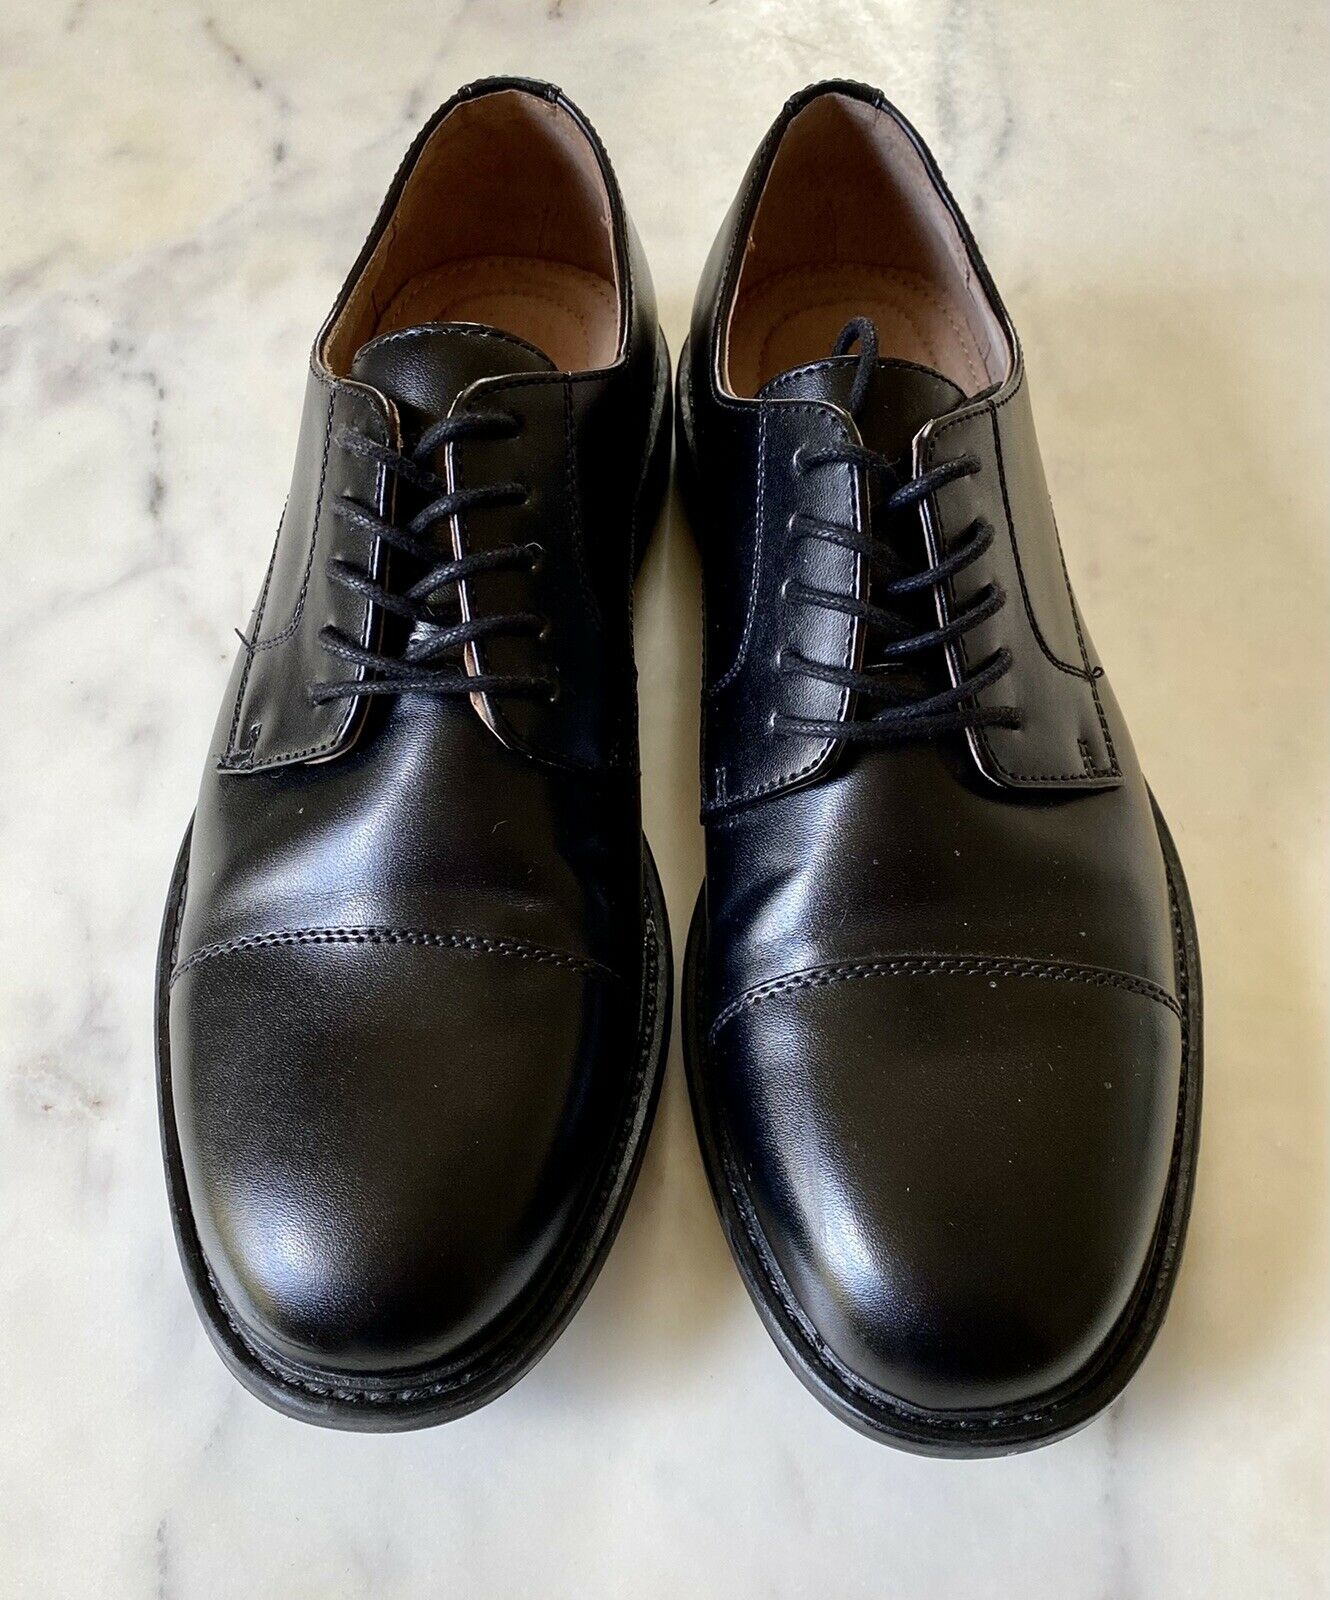 Classic Black Men’s Dress Shoe Size 8, Merona Laces Excellent Condition Boys Men